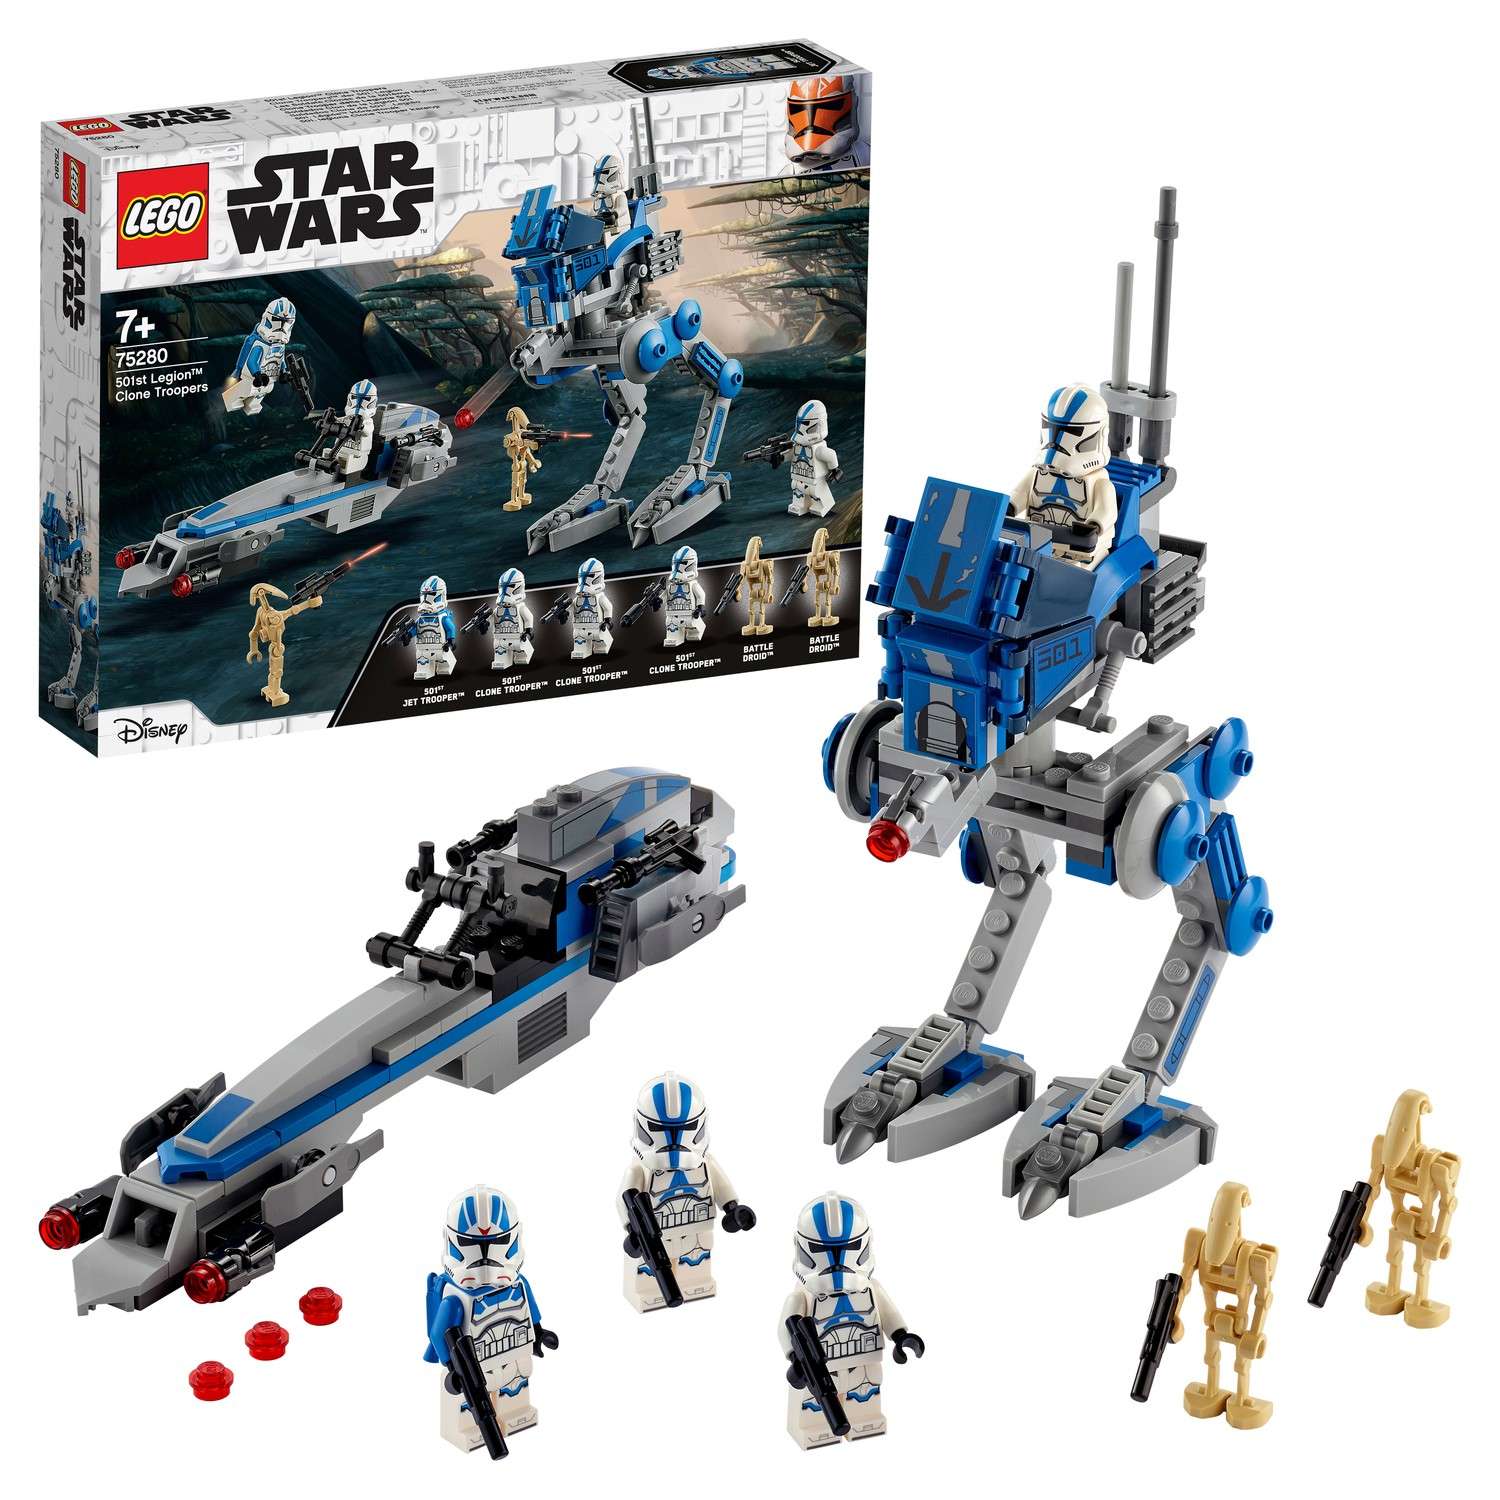 Конструктор LEGO Star Wars Клоны-пехотинцы 501легиона 75280 - фото 1